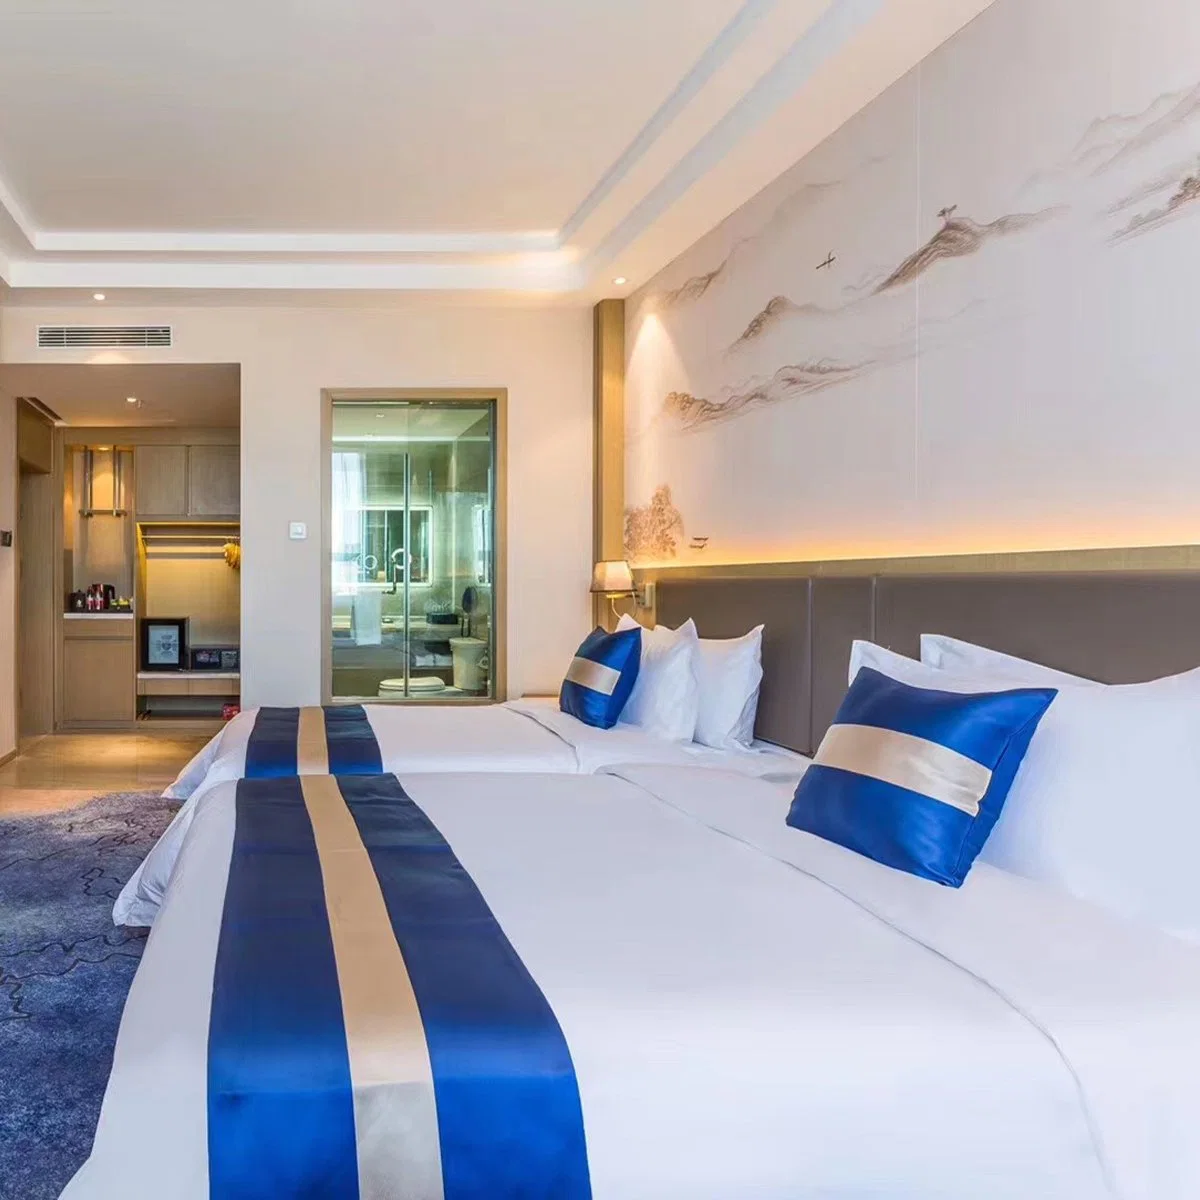 Ensemble complet de lit en cuir de taille jumelle de style moderne pour chambre d'hôtel commercial de l'hôtellerie.